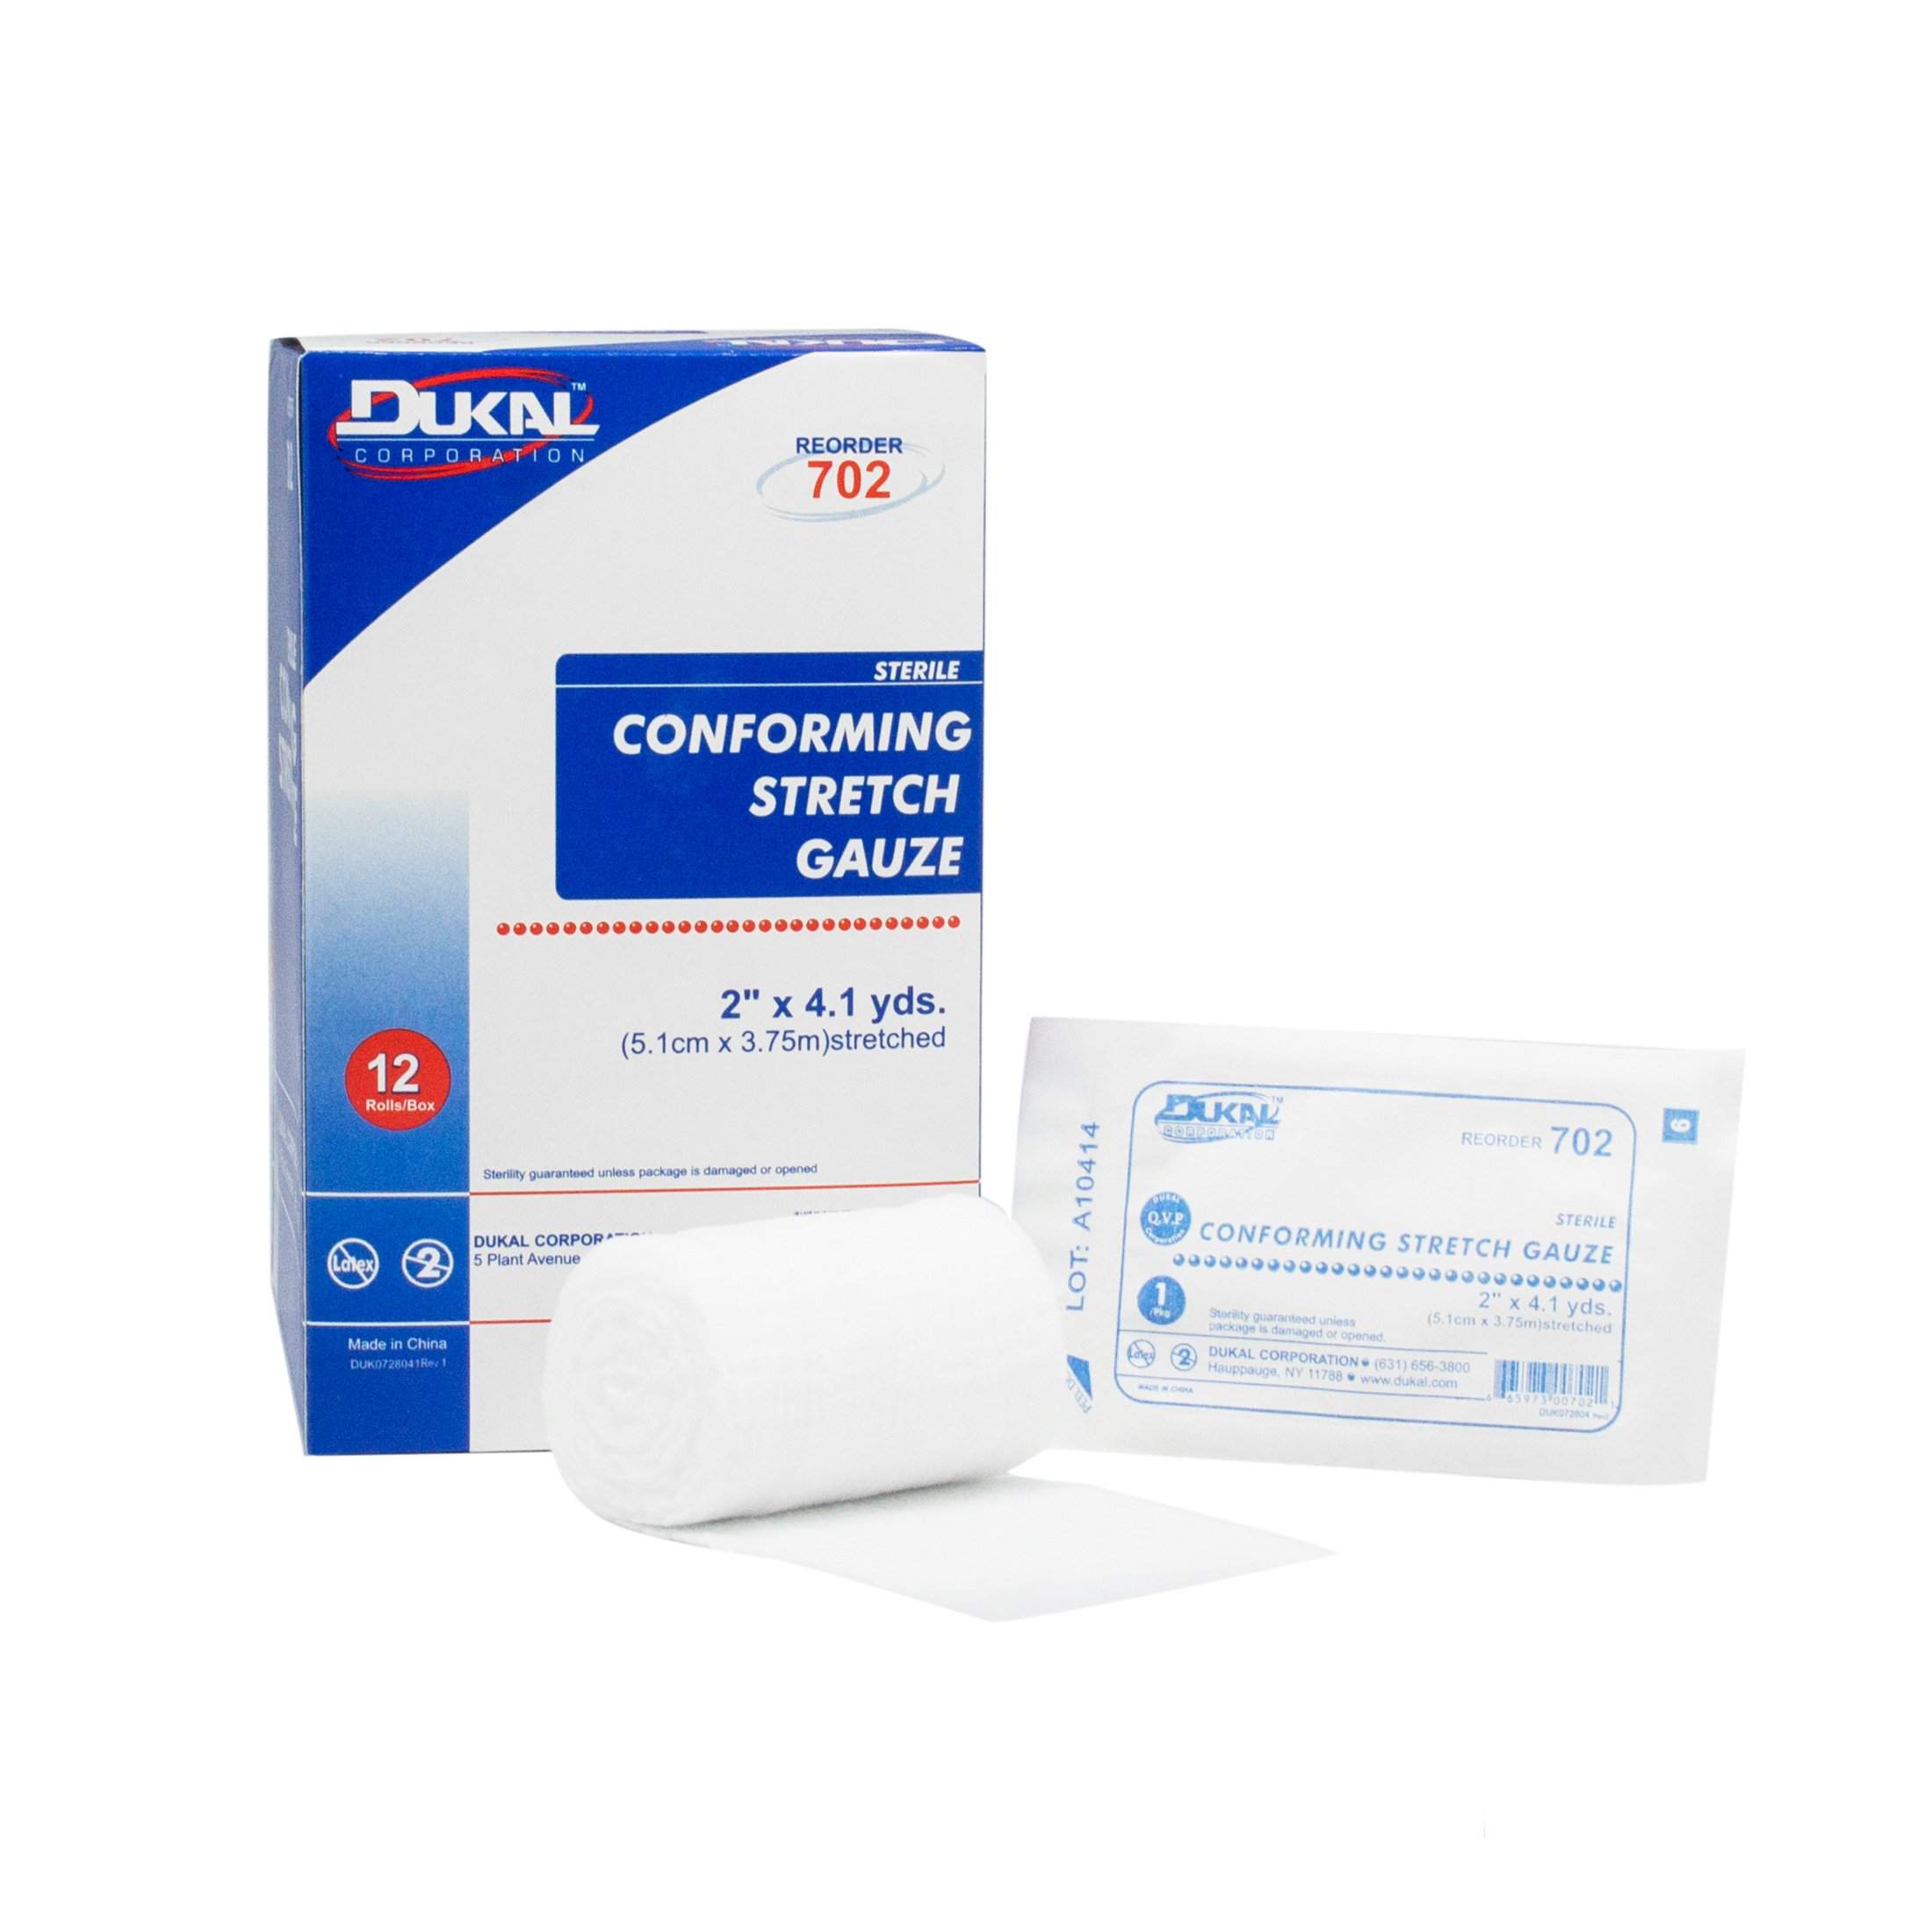 Dukal - 702 DUKAL Conforming Stretch Gauze Bandage, 2